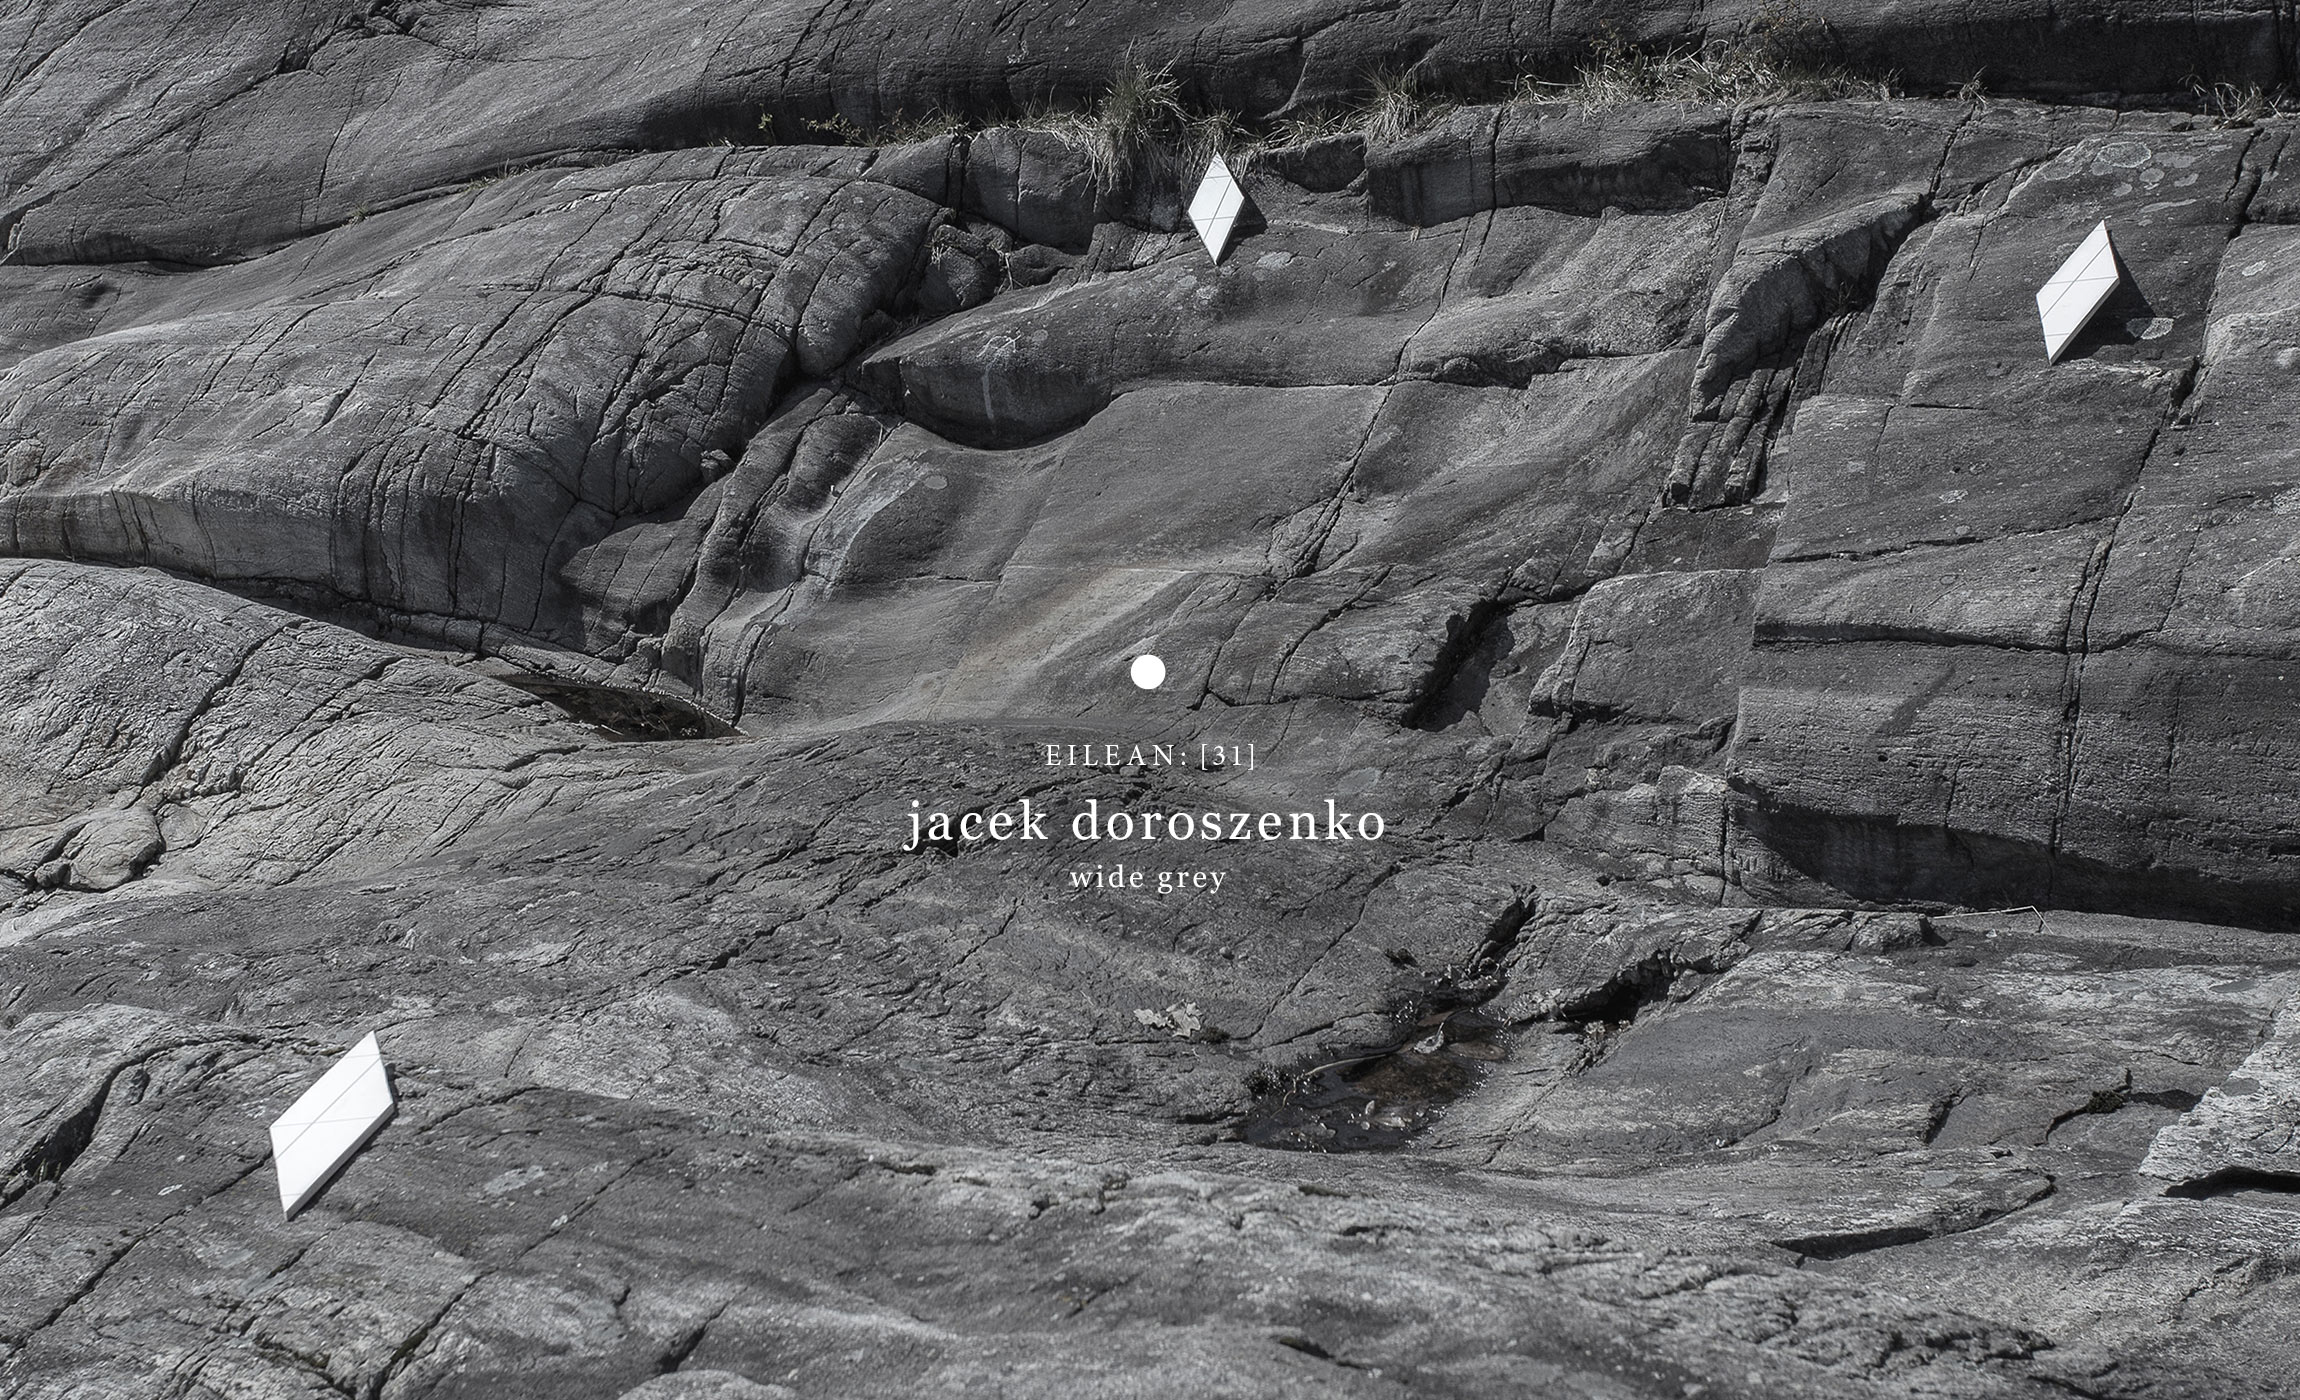 Jacek Doroszenko - Wide Grey, Eilean Records, album detail 4